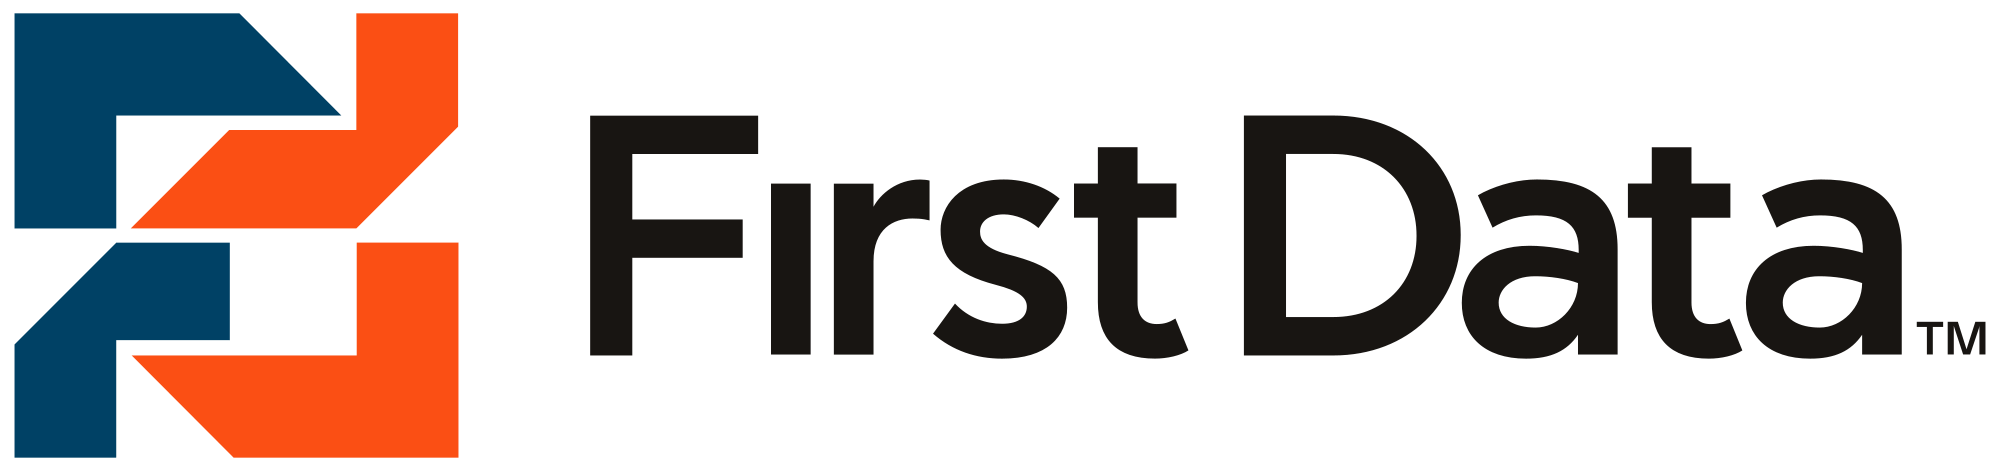 New First Data Logo - First Data logo.svg